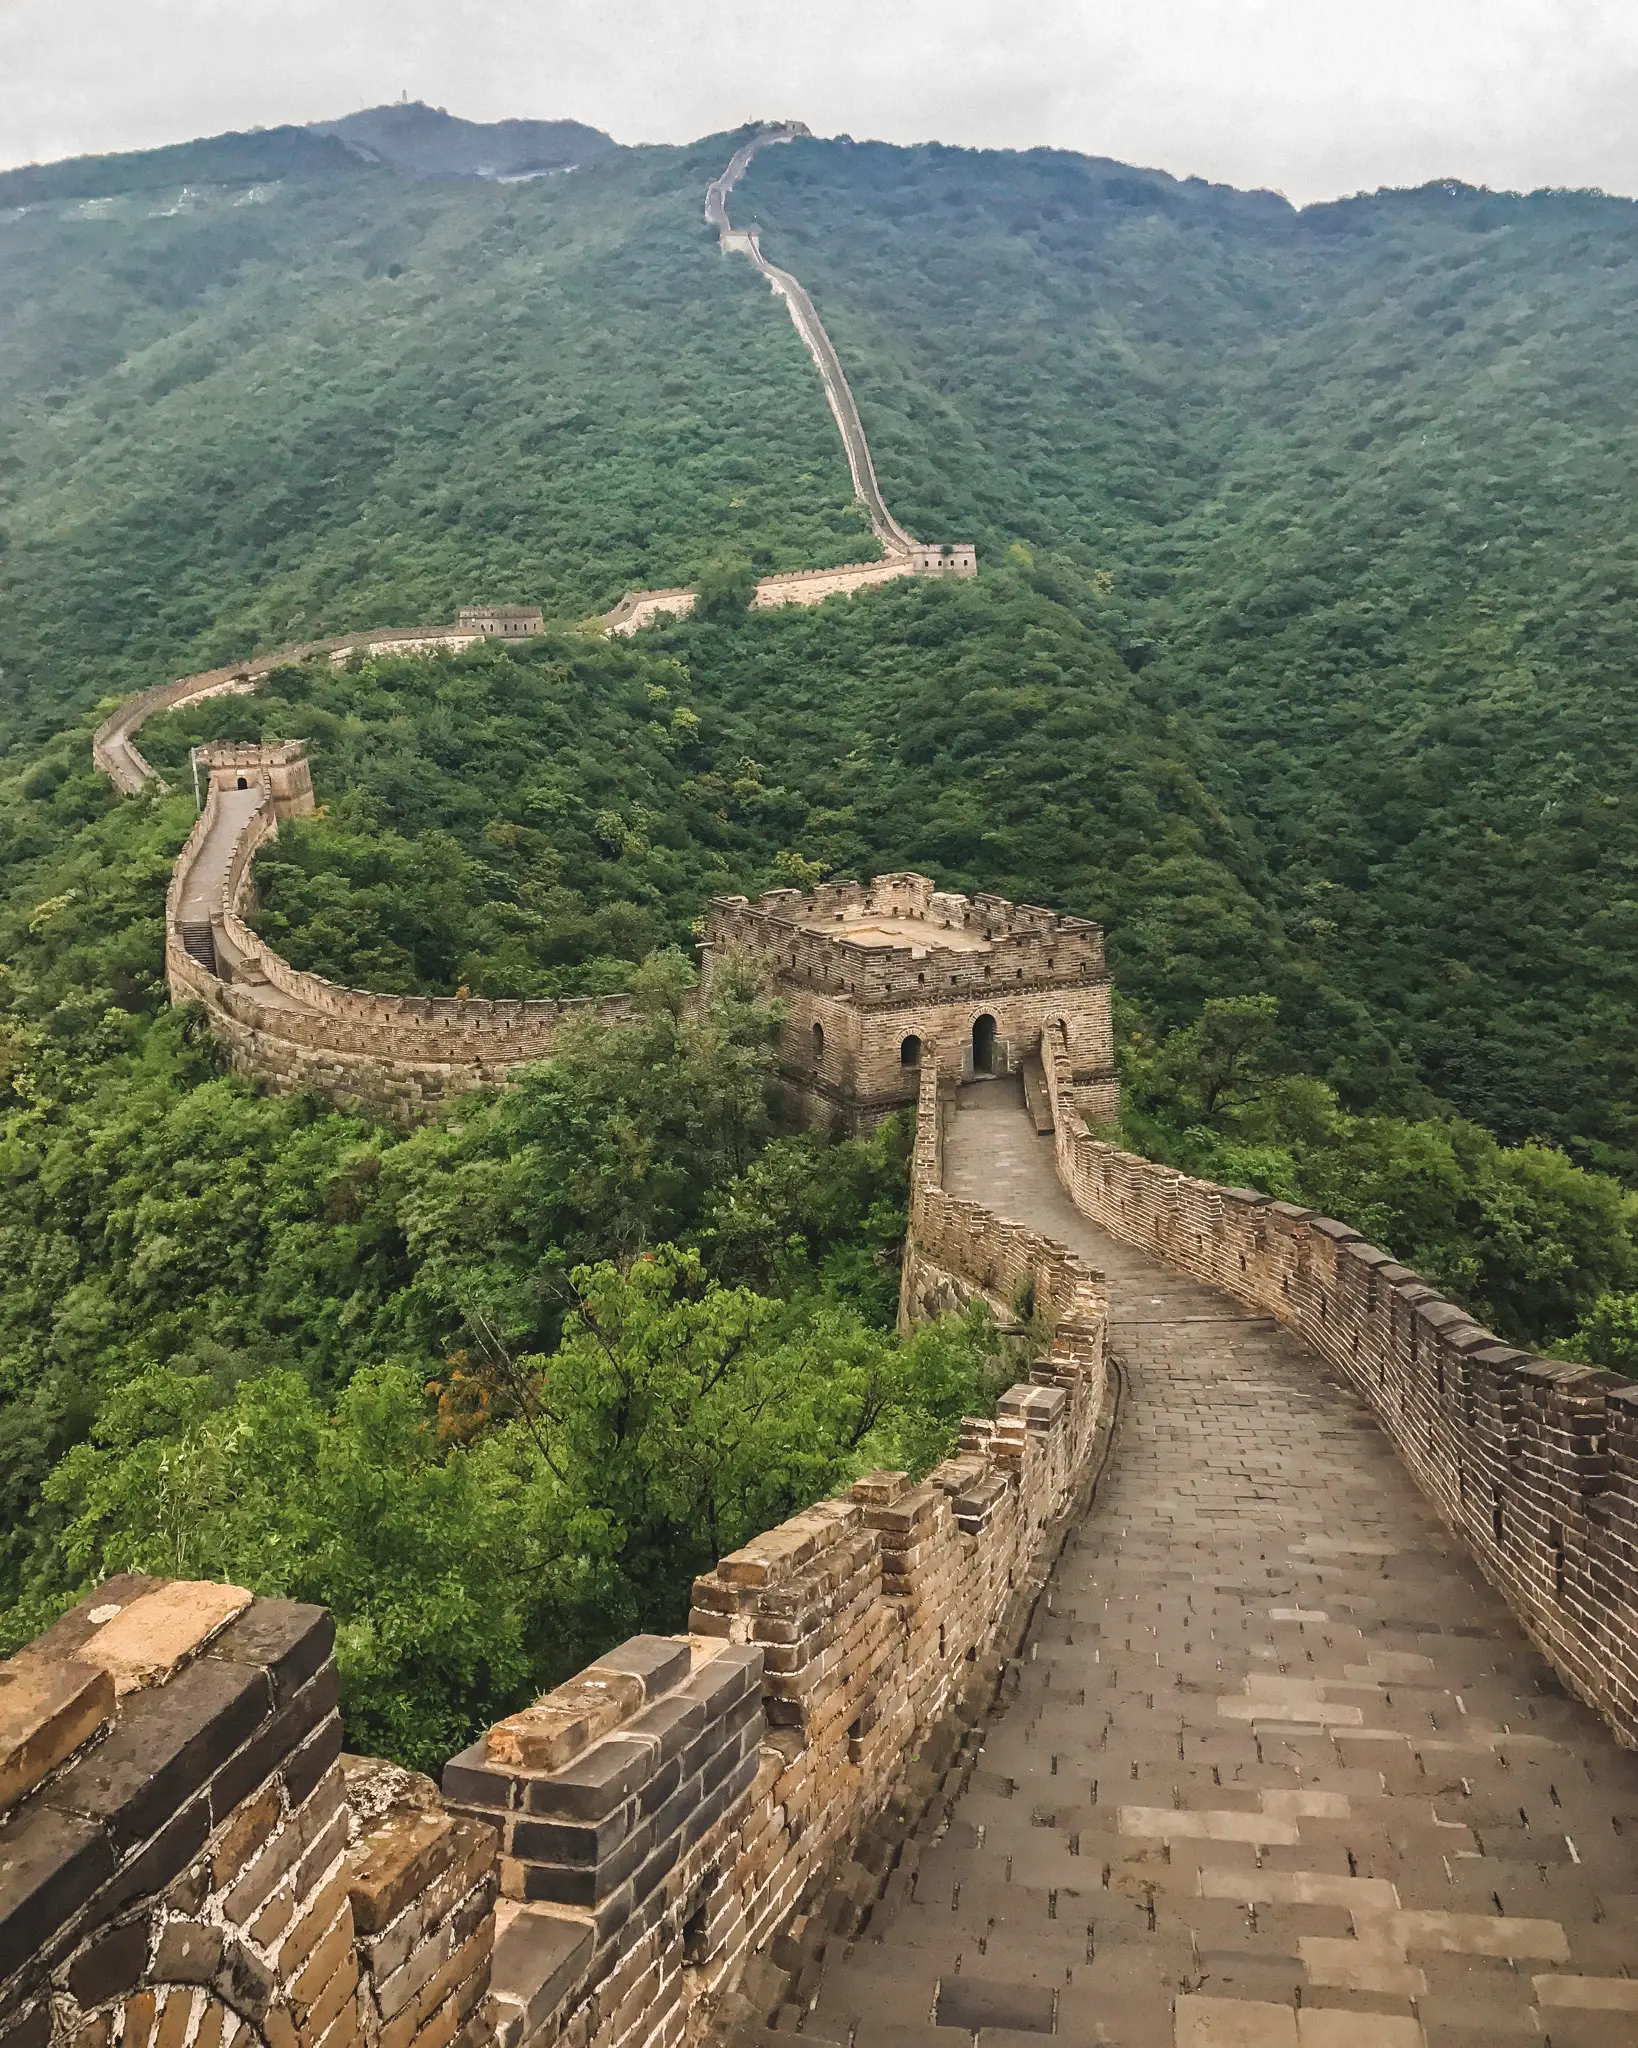 The Mutianyu Great Wall near Beijing